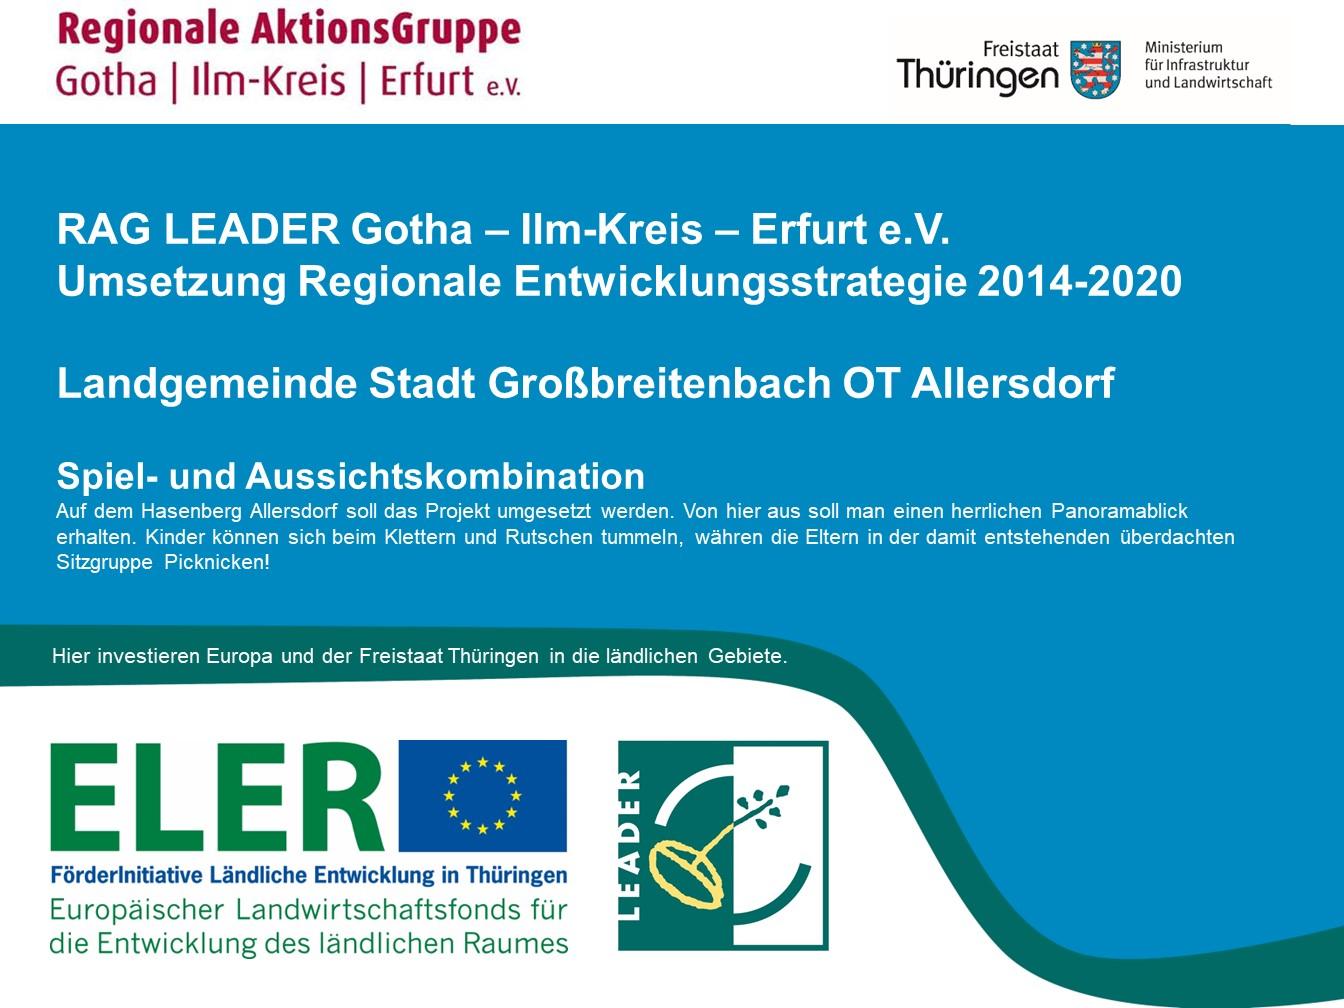 LEADER Förderung für die Aussichts- und Spielkombination Allersdorf